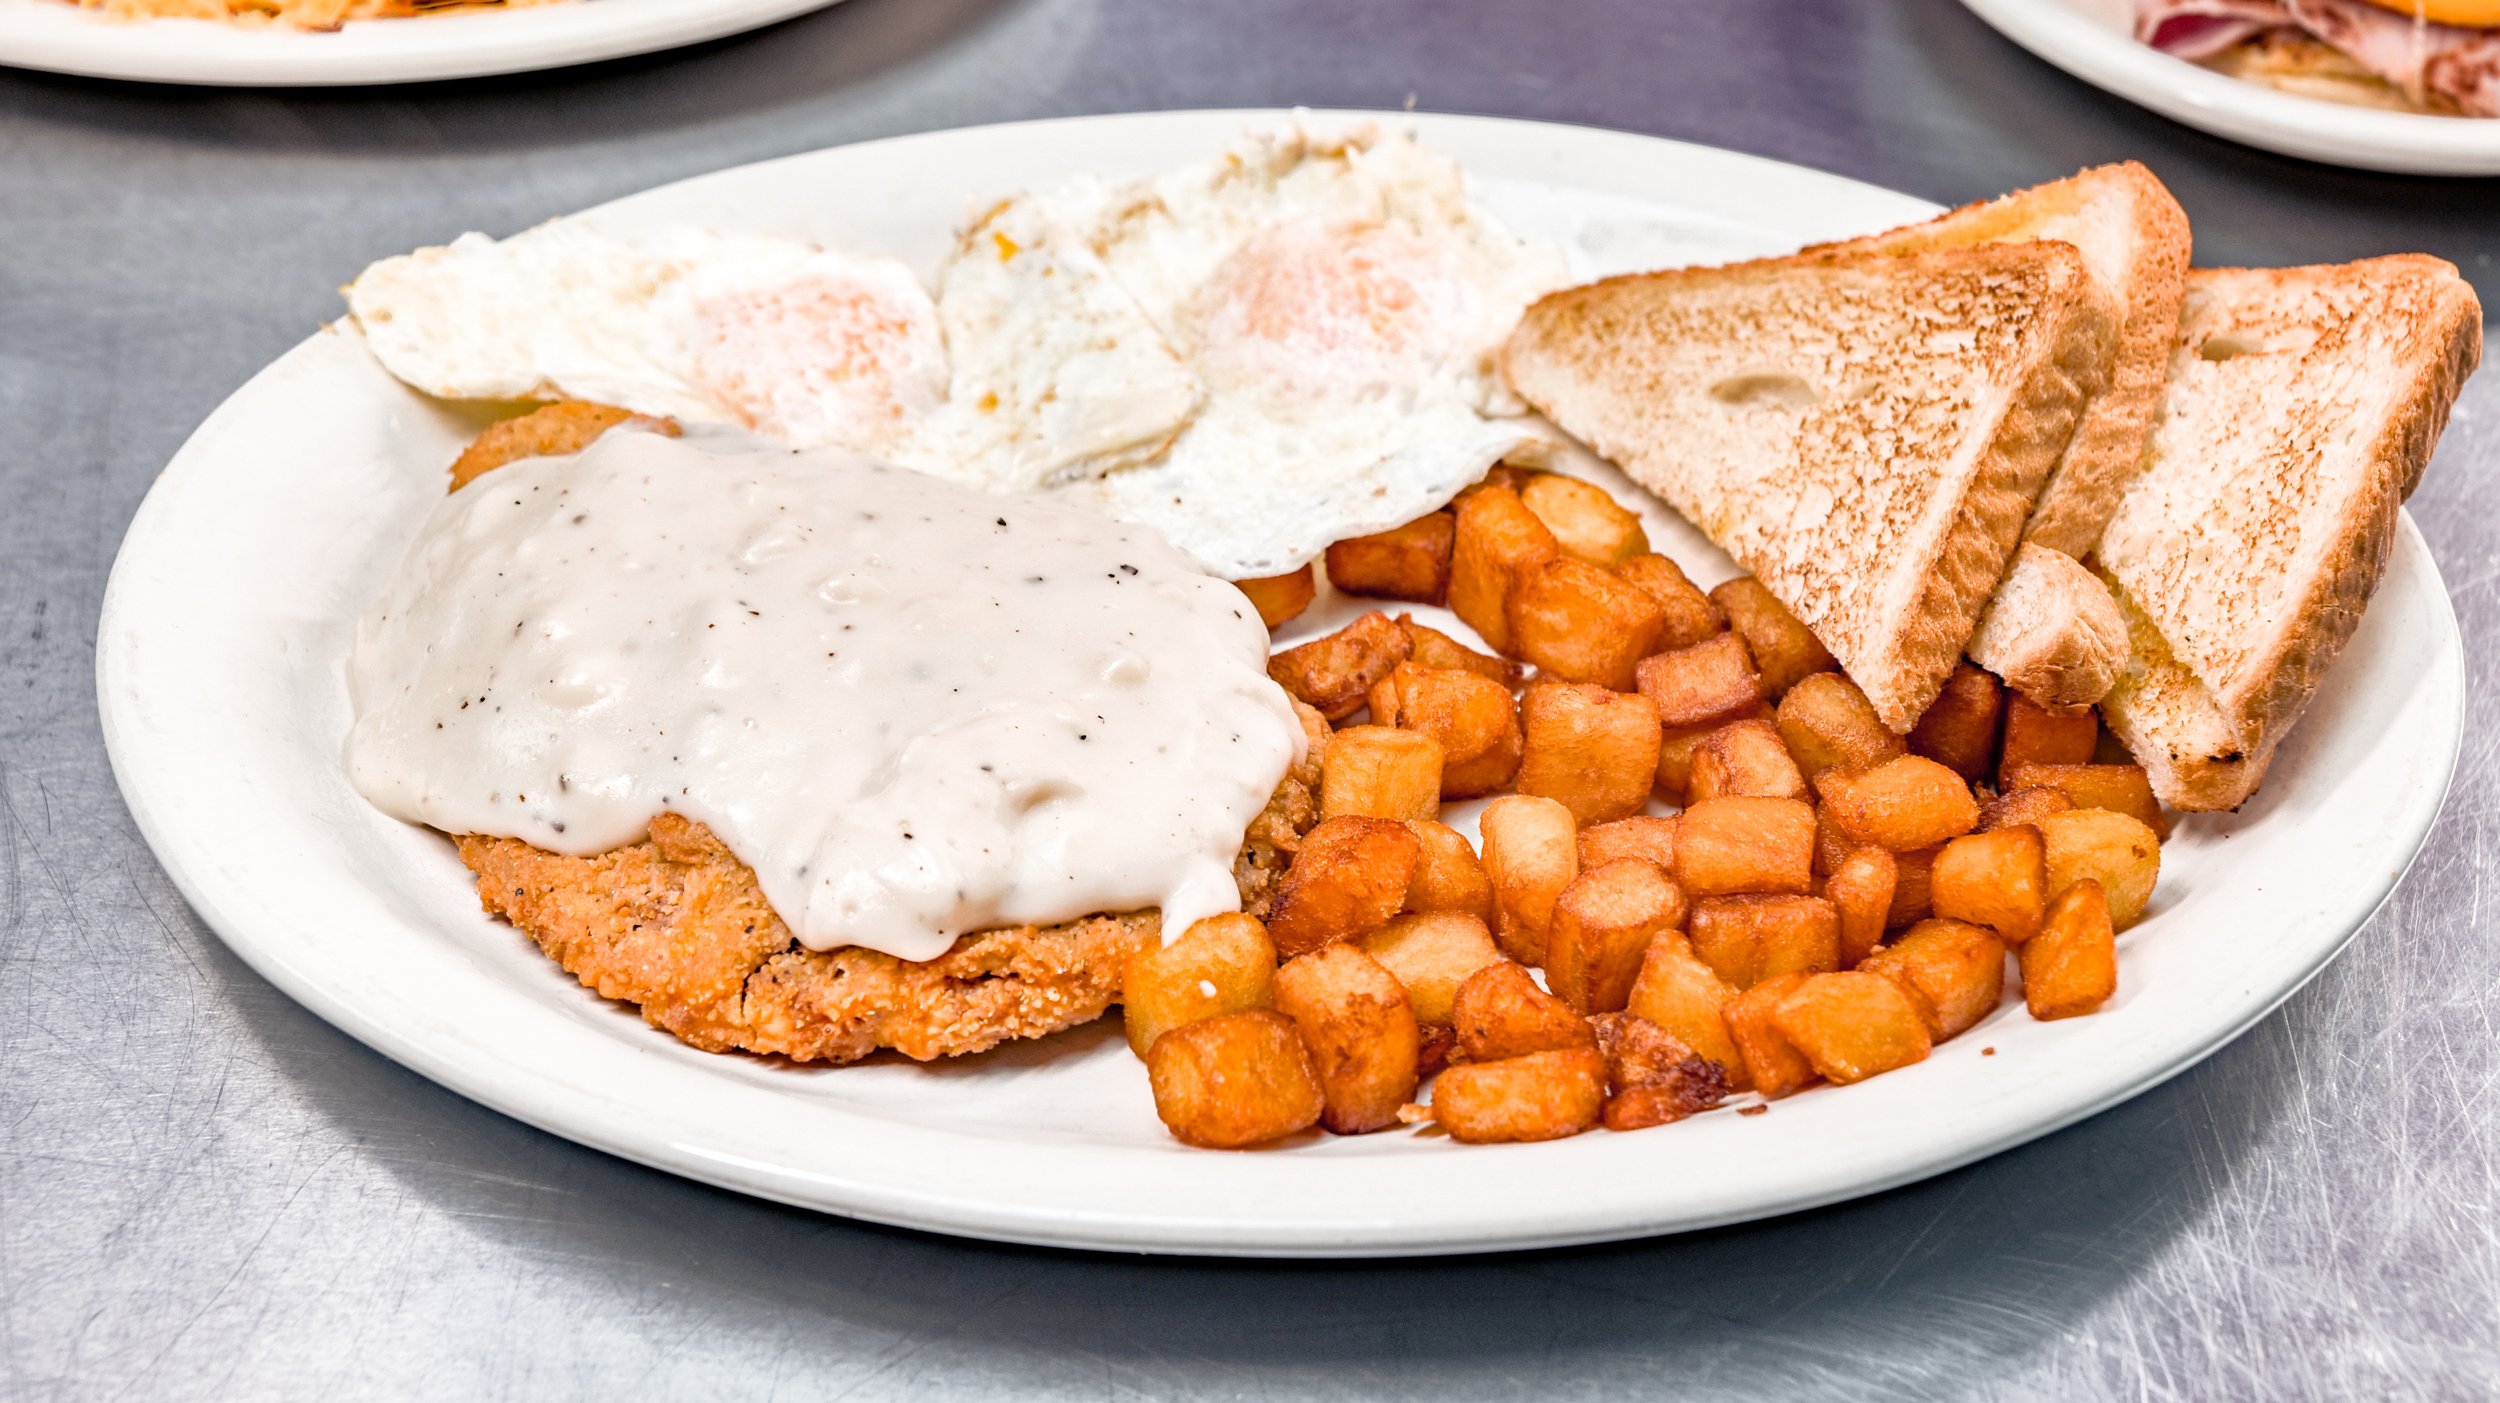 Tenderloin & Gravy Breakfast Plate Country Cafe.jpg